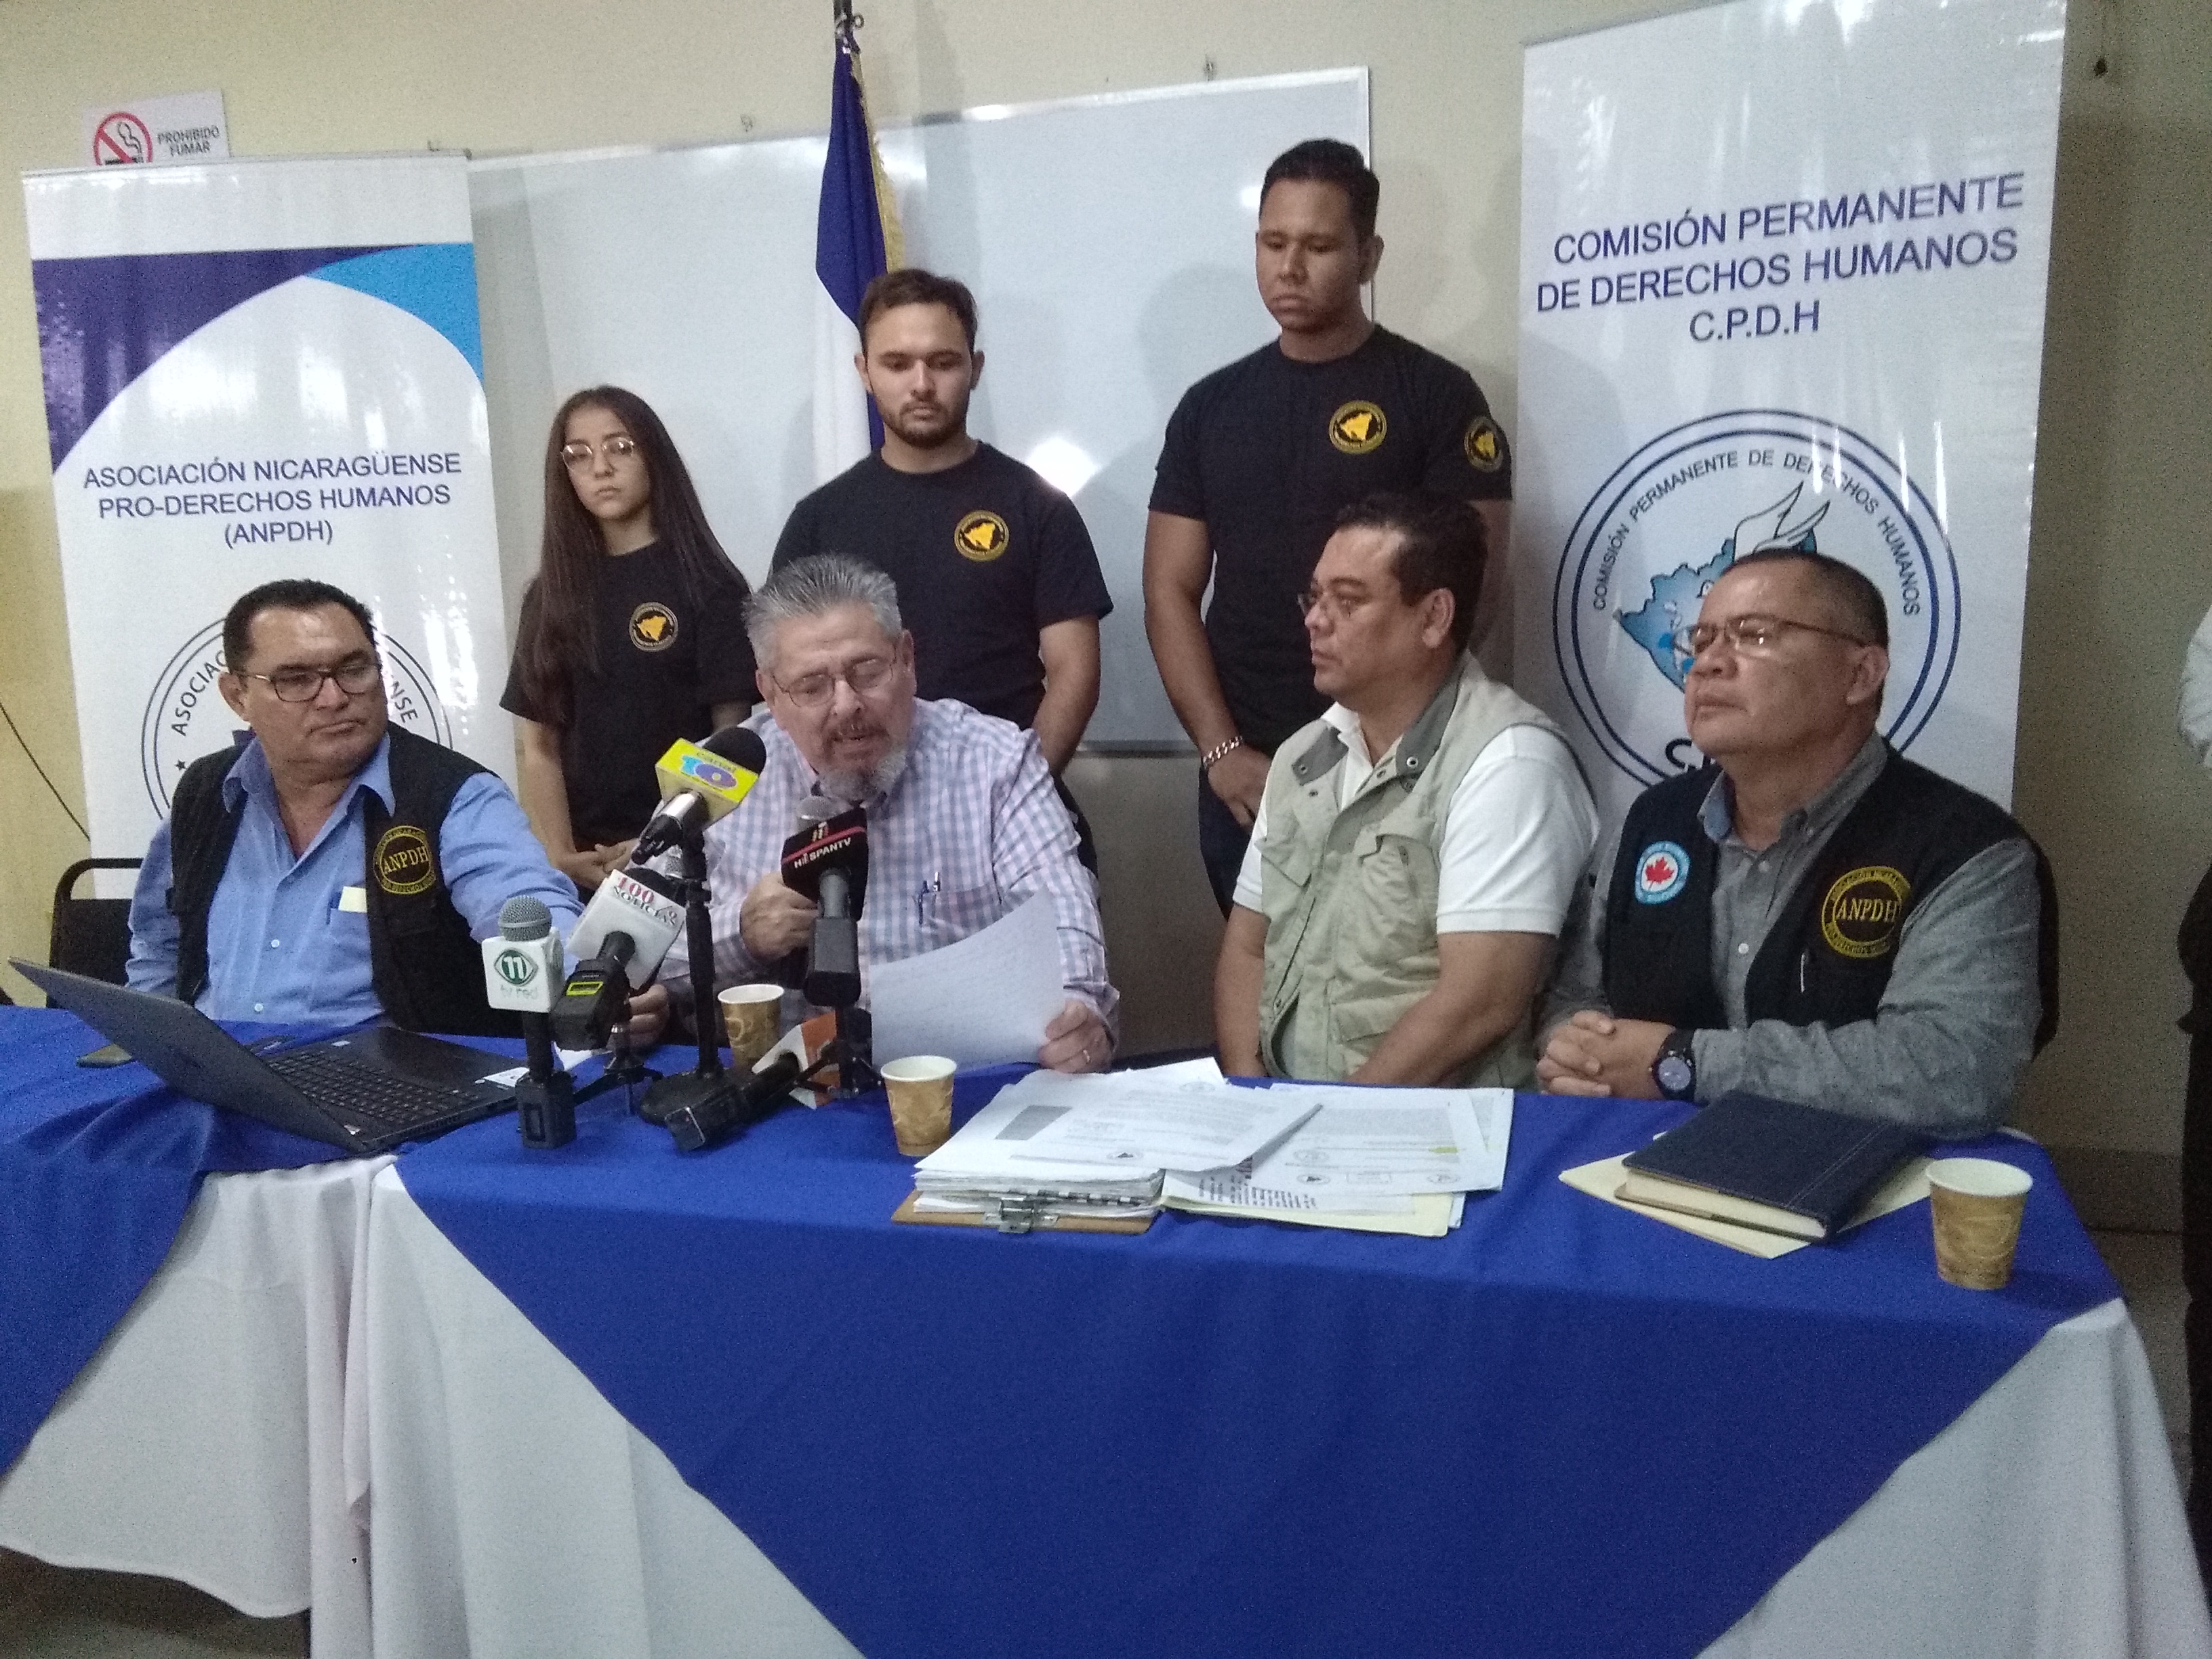 Informe sobre violaciones a los derechos humanos en Nicaragua de la ANPDH y CPDH. Foto: A. Cruz